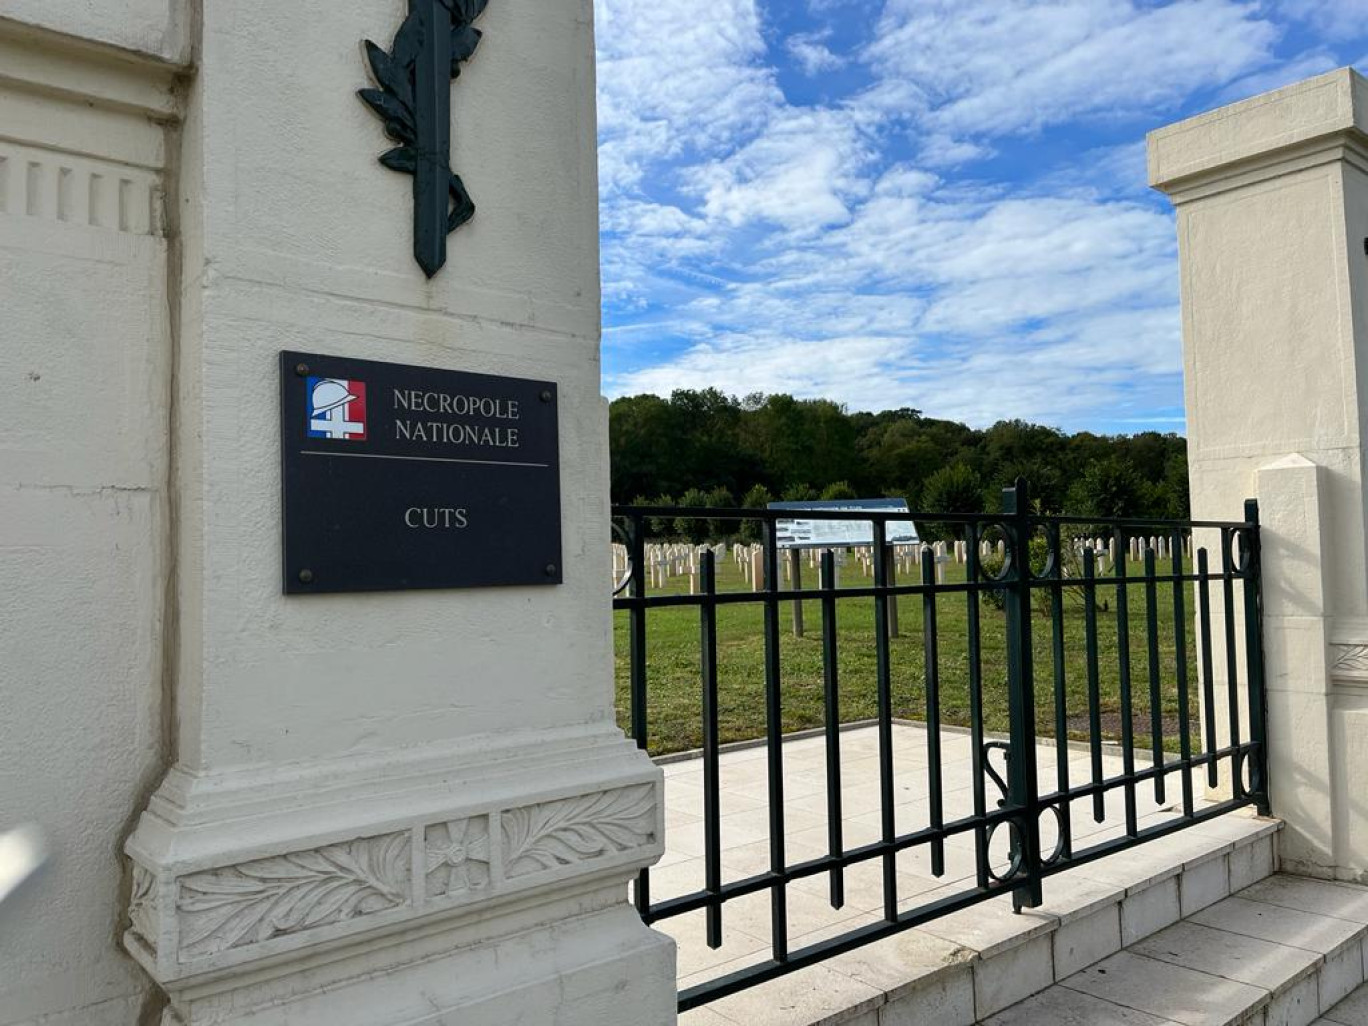 La nécropole nationale de Cuts est un cimetière militaire français de la Première Guerre mondiale. Elle a été créée en 1920 pour rassembler les corps de soldats tués lors des batailles de l'Oise de 1914 et 1918.(c)VK